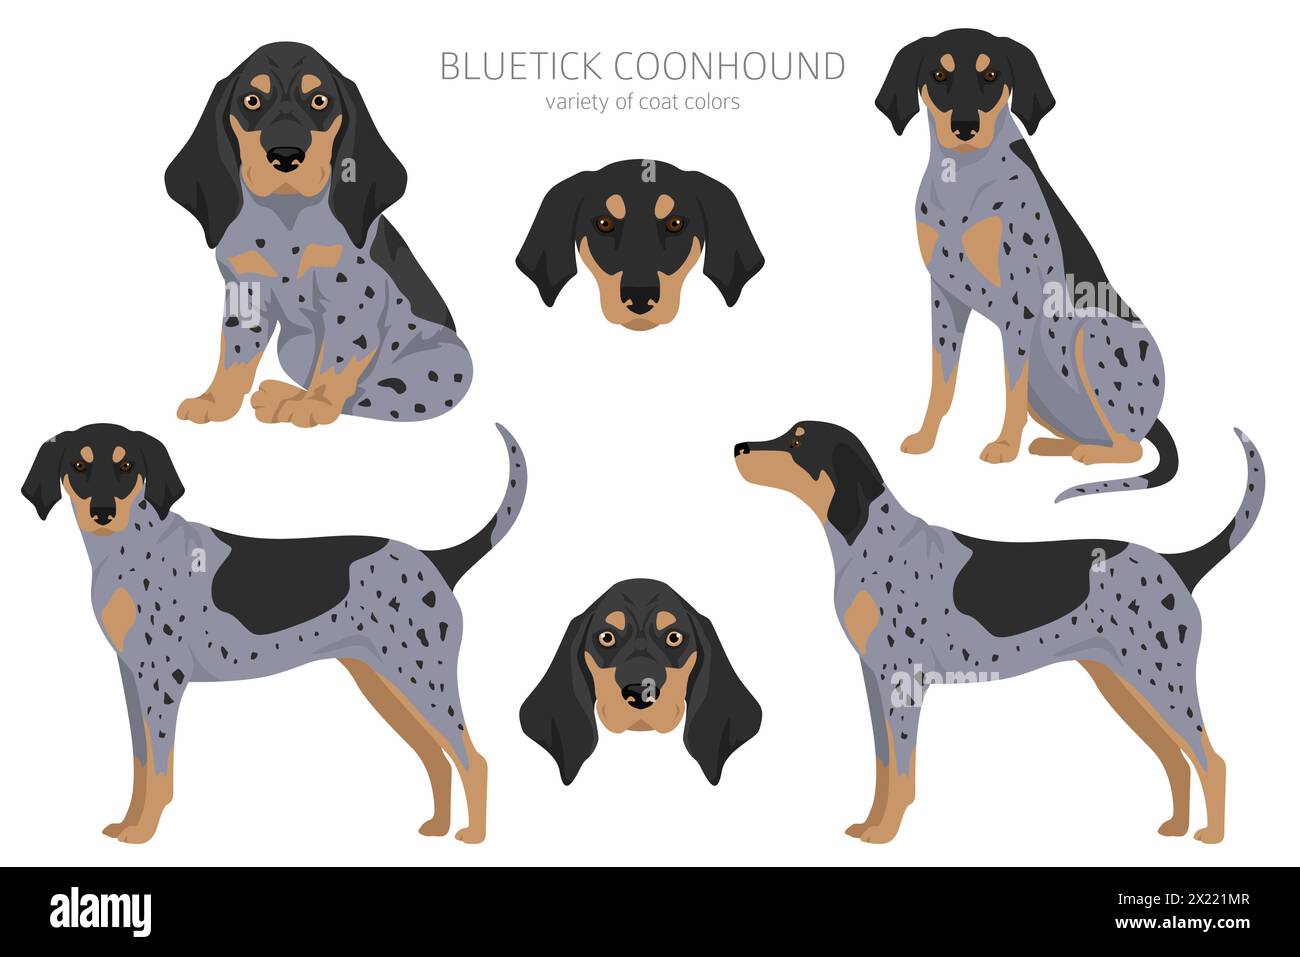 Bluetick coonhound clipart. Diversi colori del cappotto e set di pose. Illustrazione vettoriale Illustrazione Vettoriale